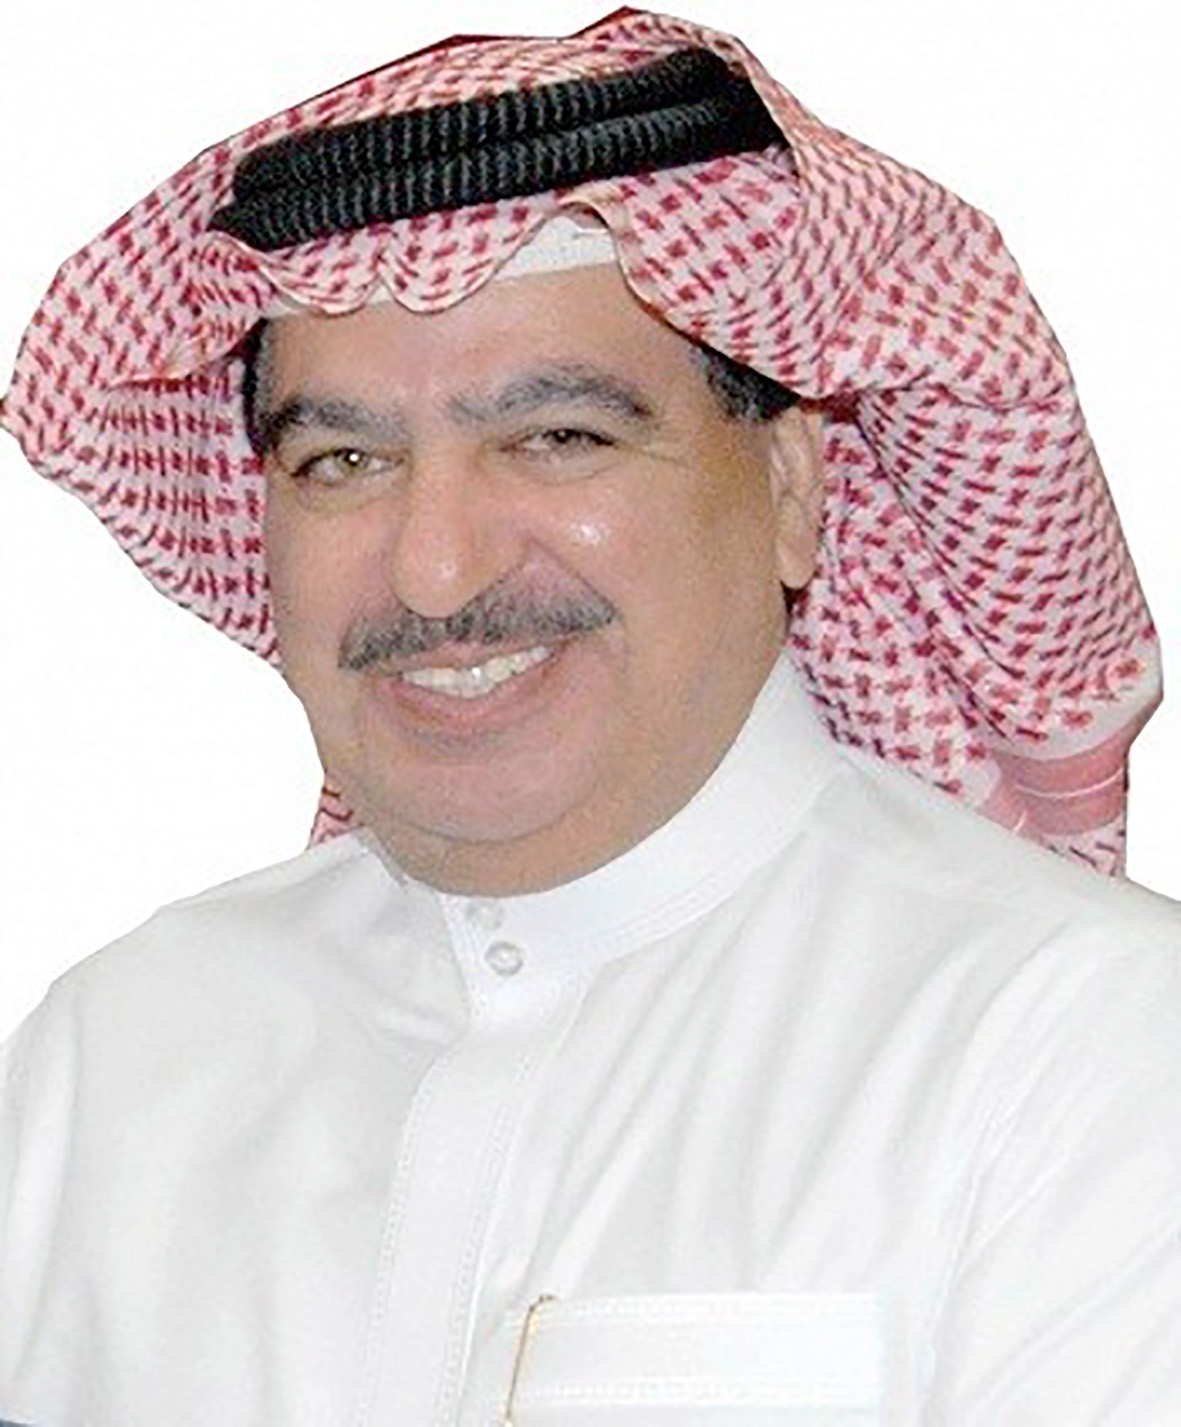 جمال الياقوت عضو مجلس الإدارة رئيس اللجنة الإعلامية